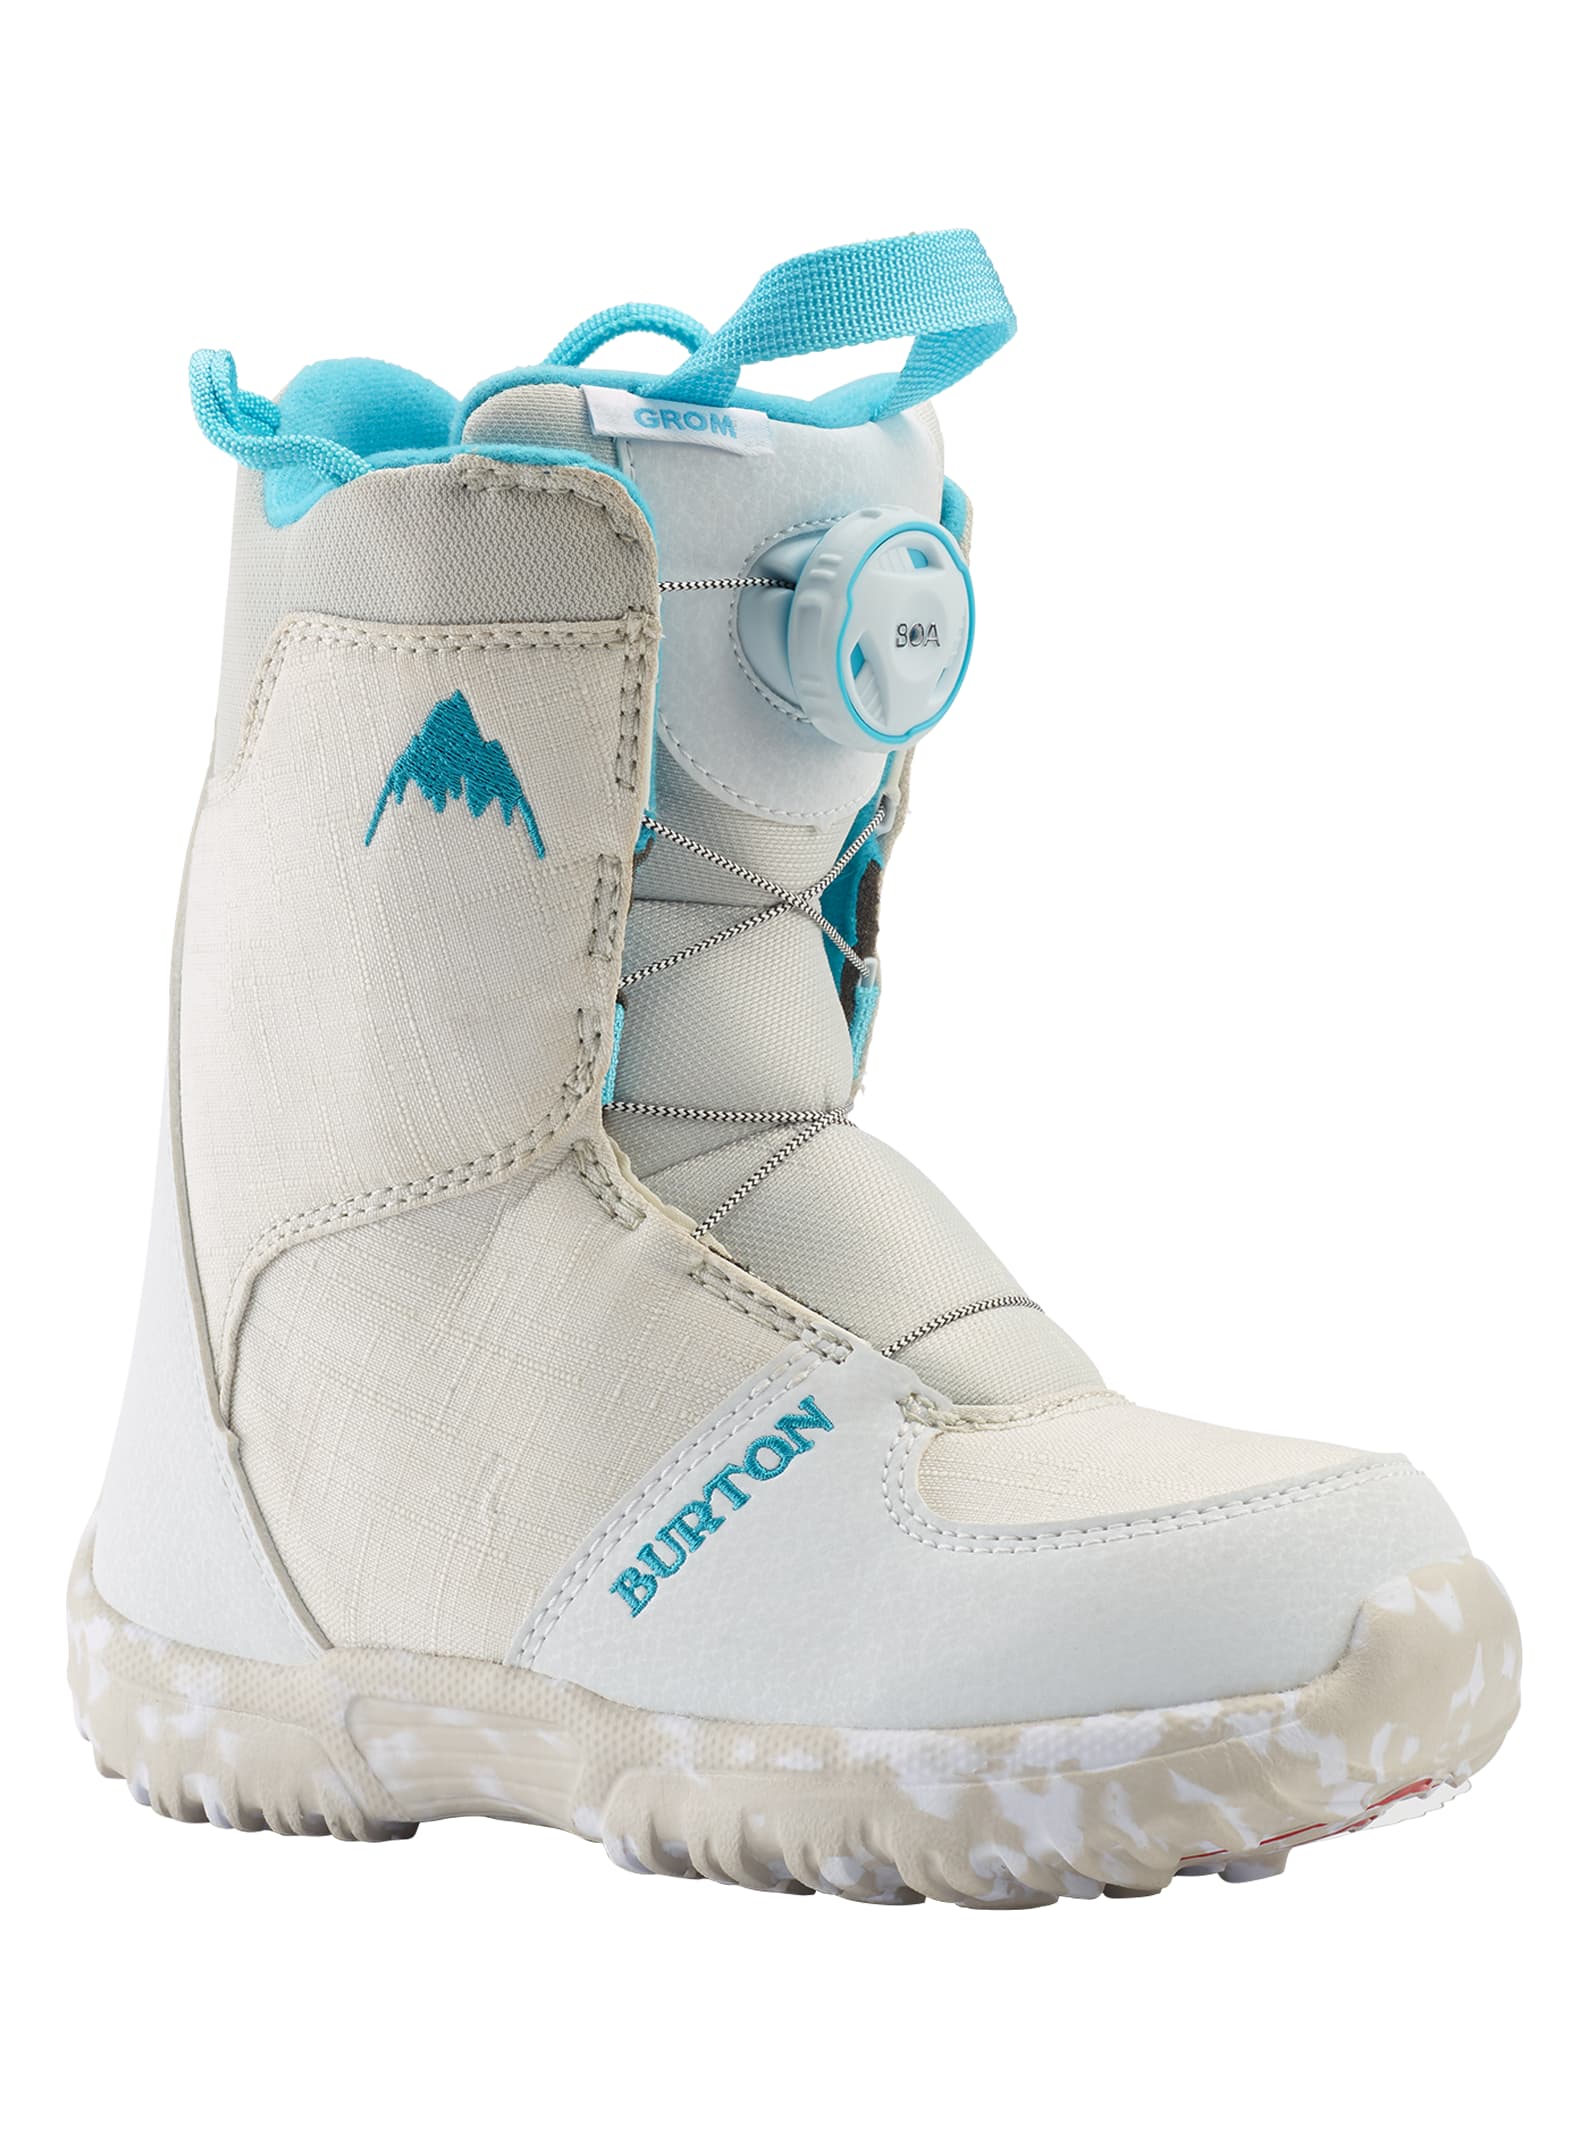 Burton - Boots de snowboard Grom Boa®, White, 12C